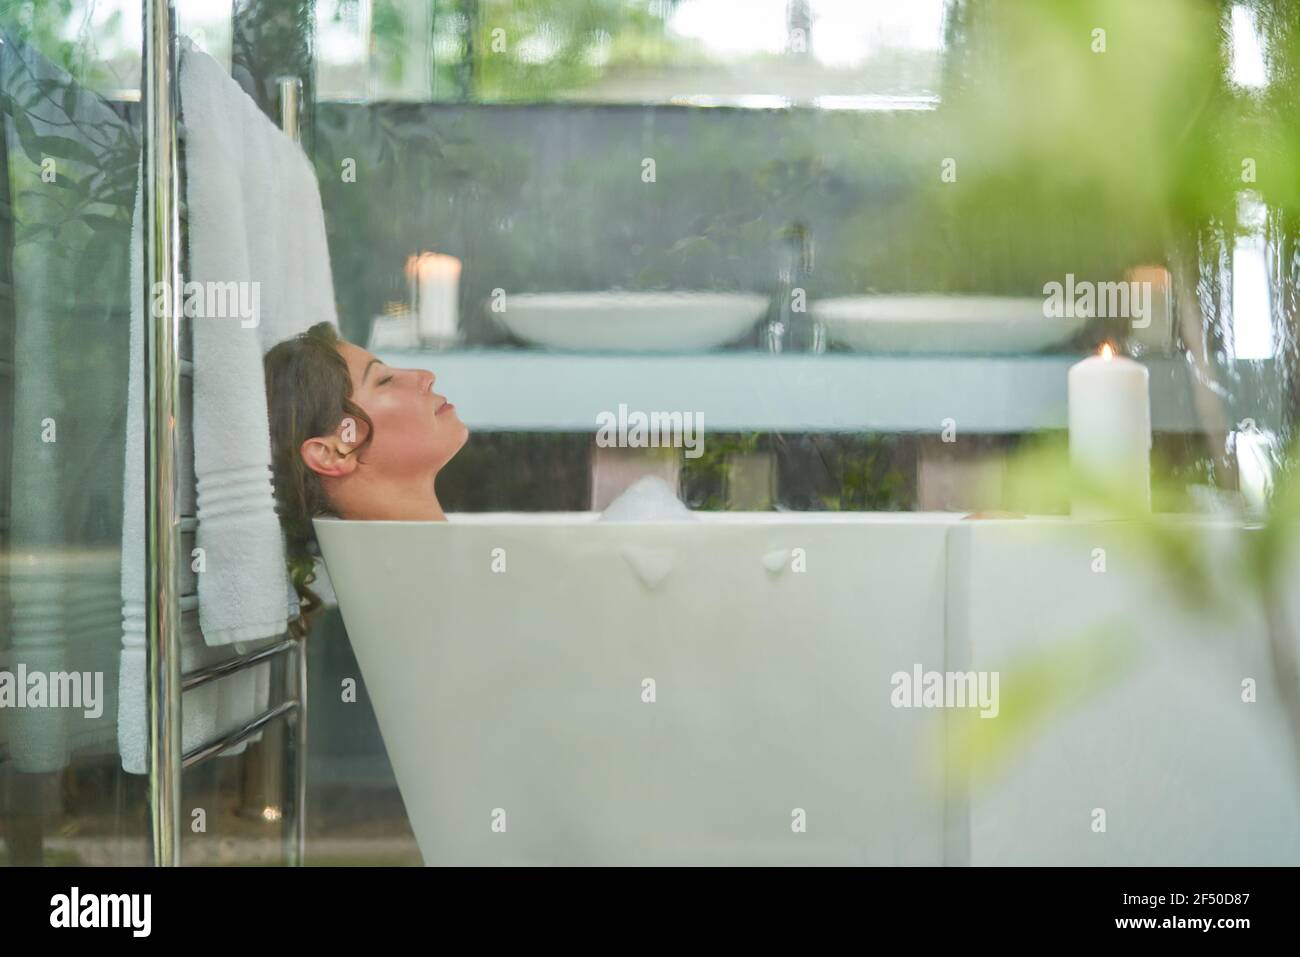 Heitere Frau genießen Schaumbad in modernen Luxus-Badezimmer Stockfoto